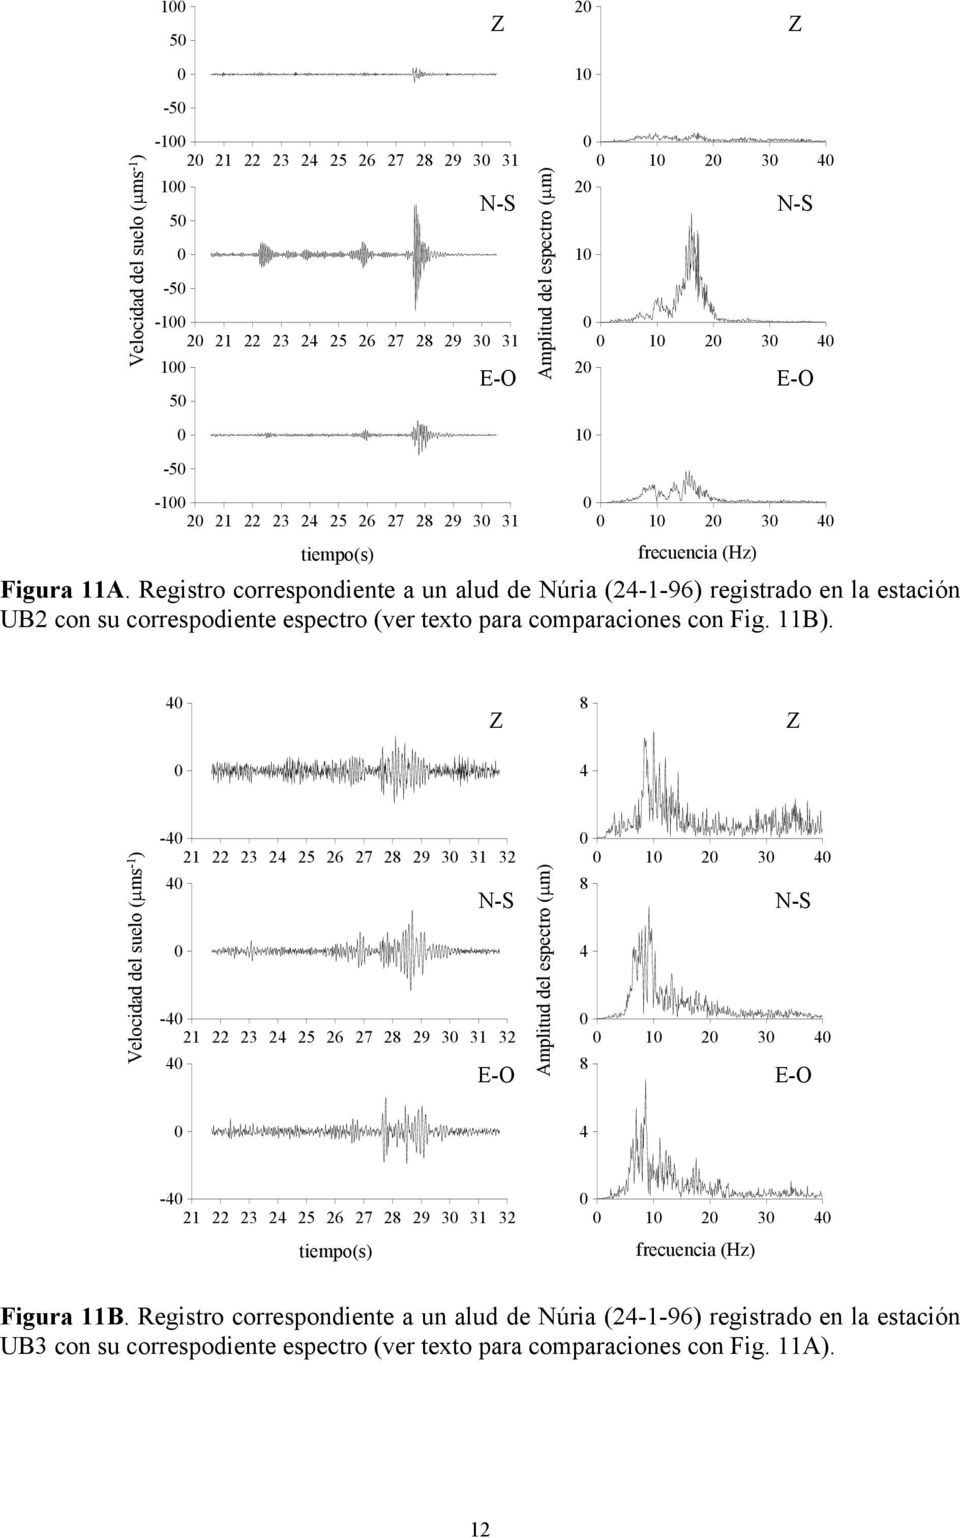 Registro correspondiente a un alud de Núria (2-1-96) registrado en la estación UB2 con su correspodiente espectro (ver texto para comparaciones con Fig. 11B).